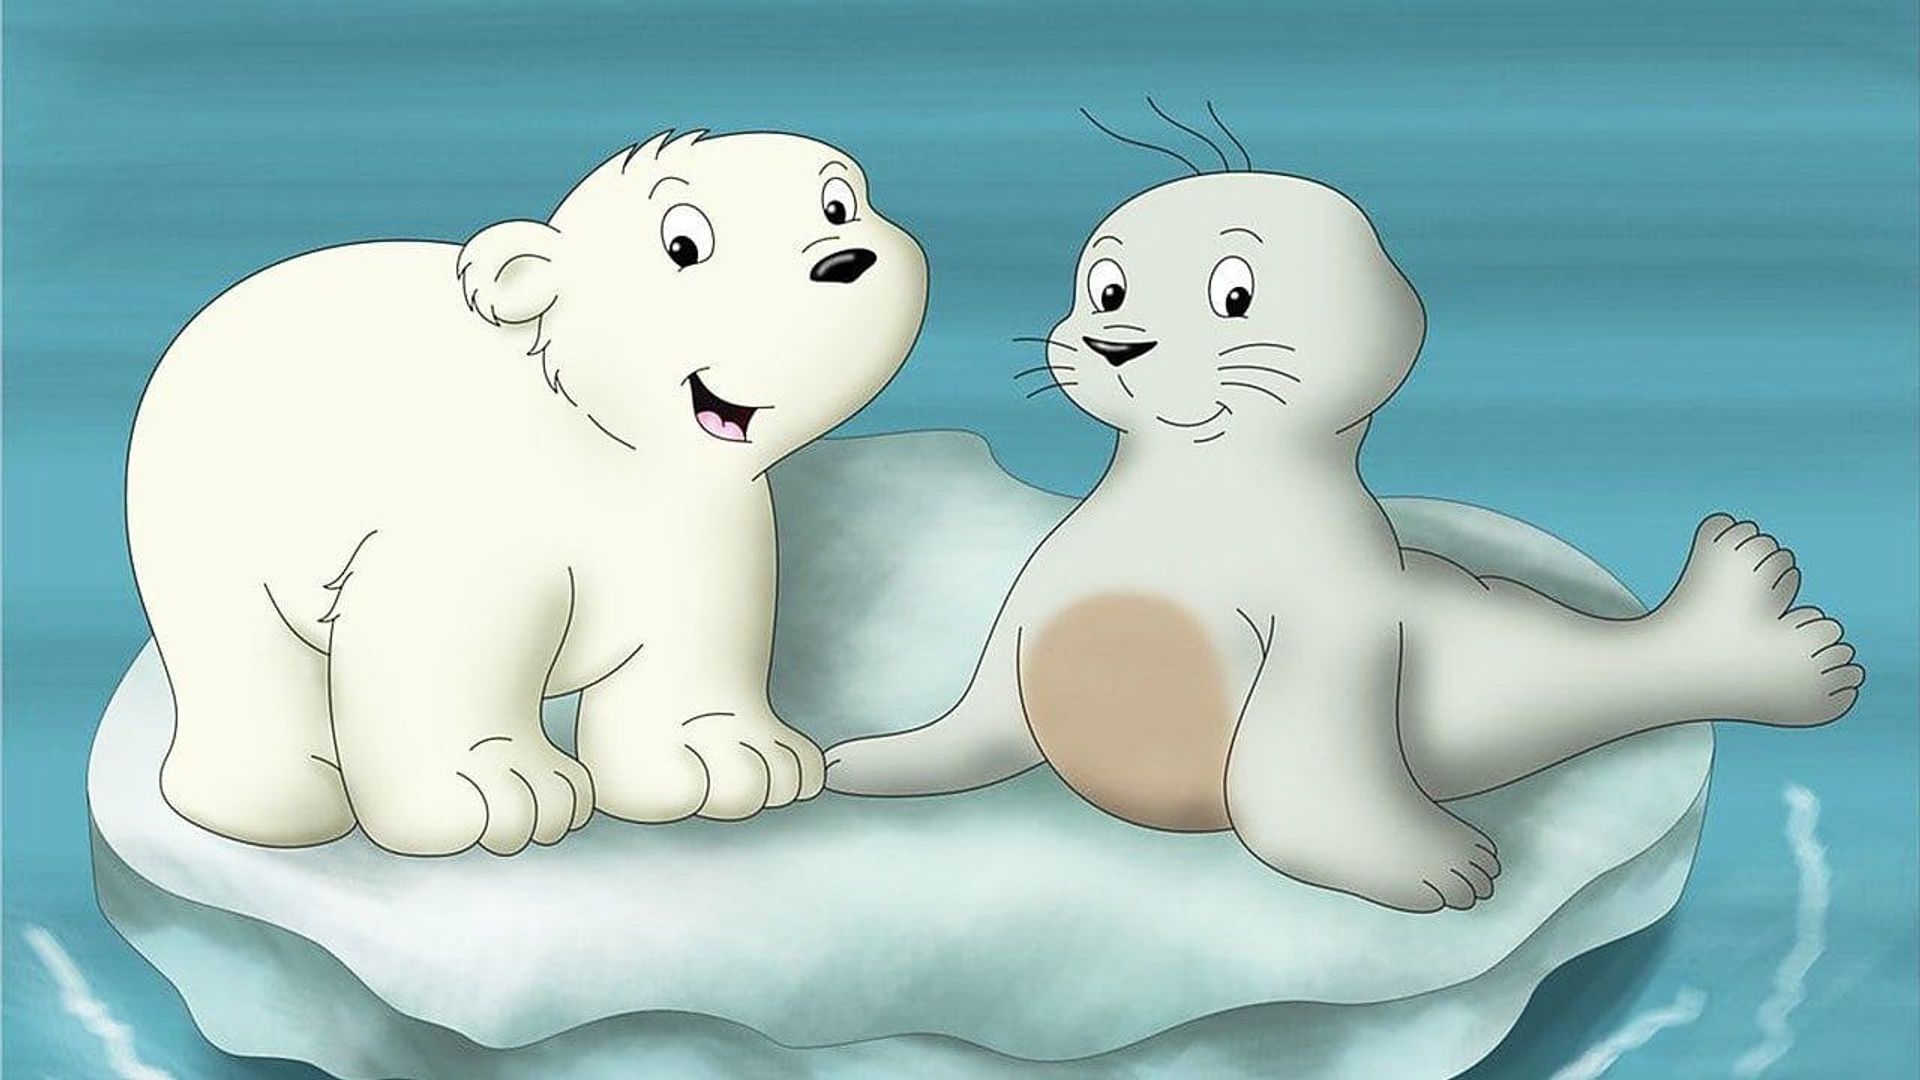 The Little Polar Bear 2: The Mysterious Island background